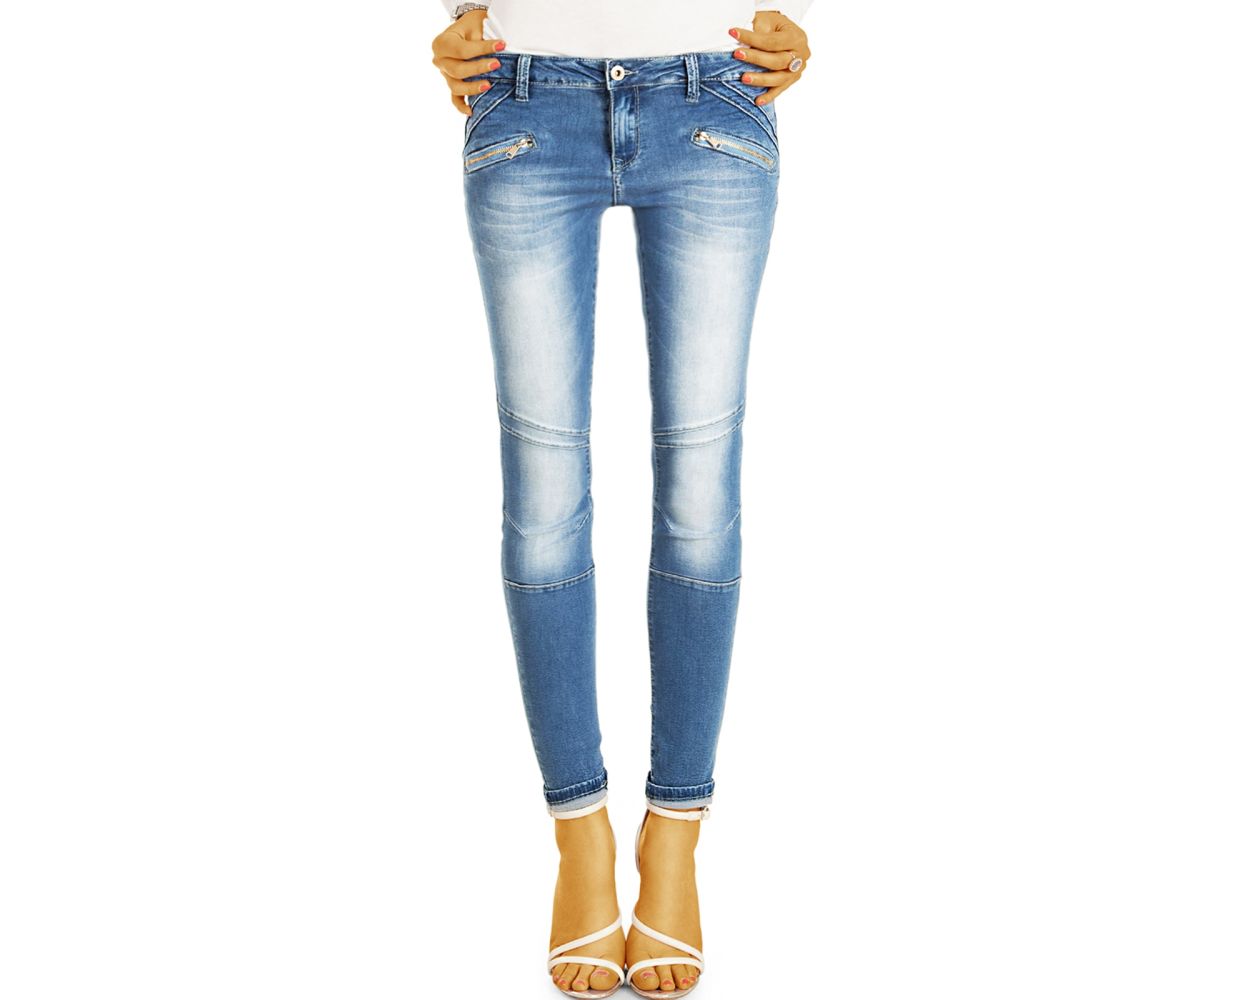 Be Styled Jeans Hosen Slimfit Stretchig Enge Rohrige Skinny Jeans Damen J24p Q